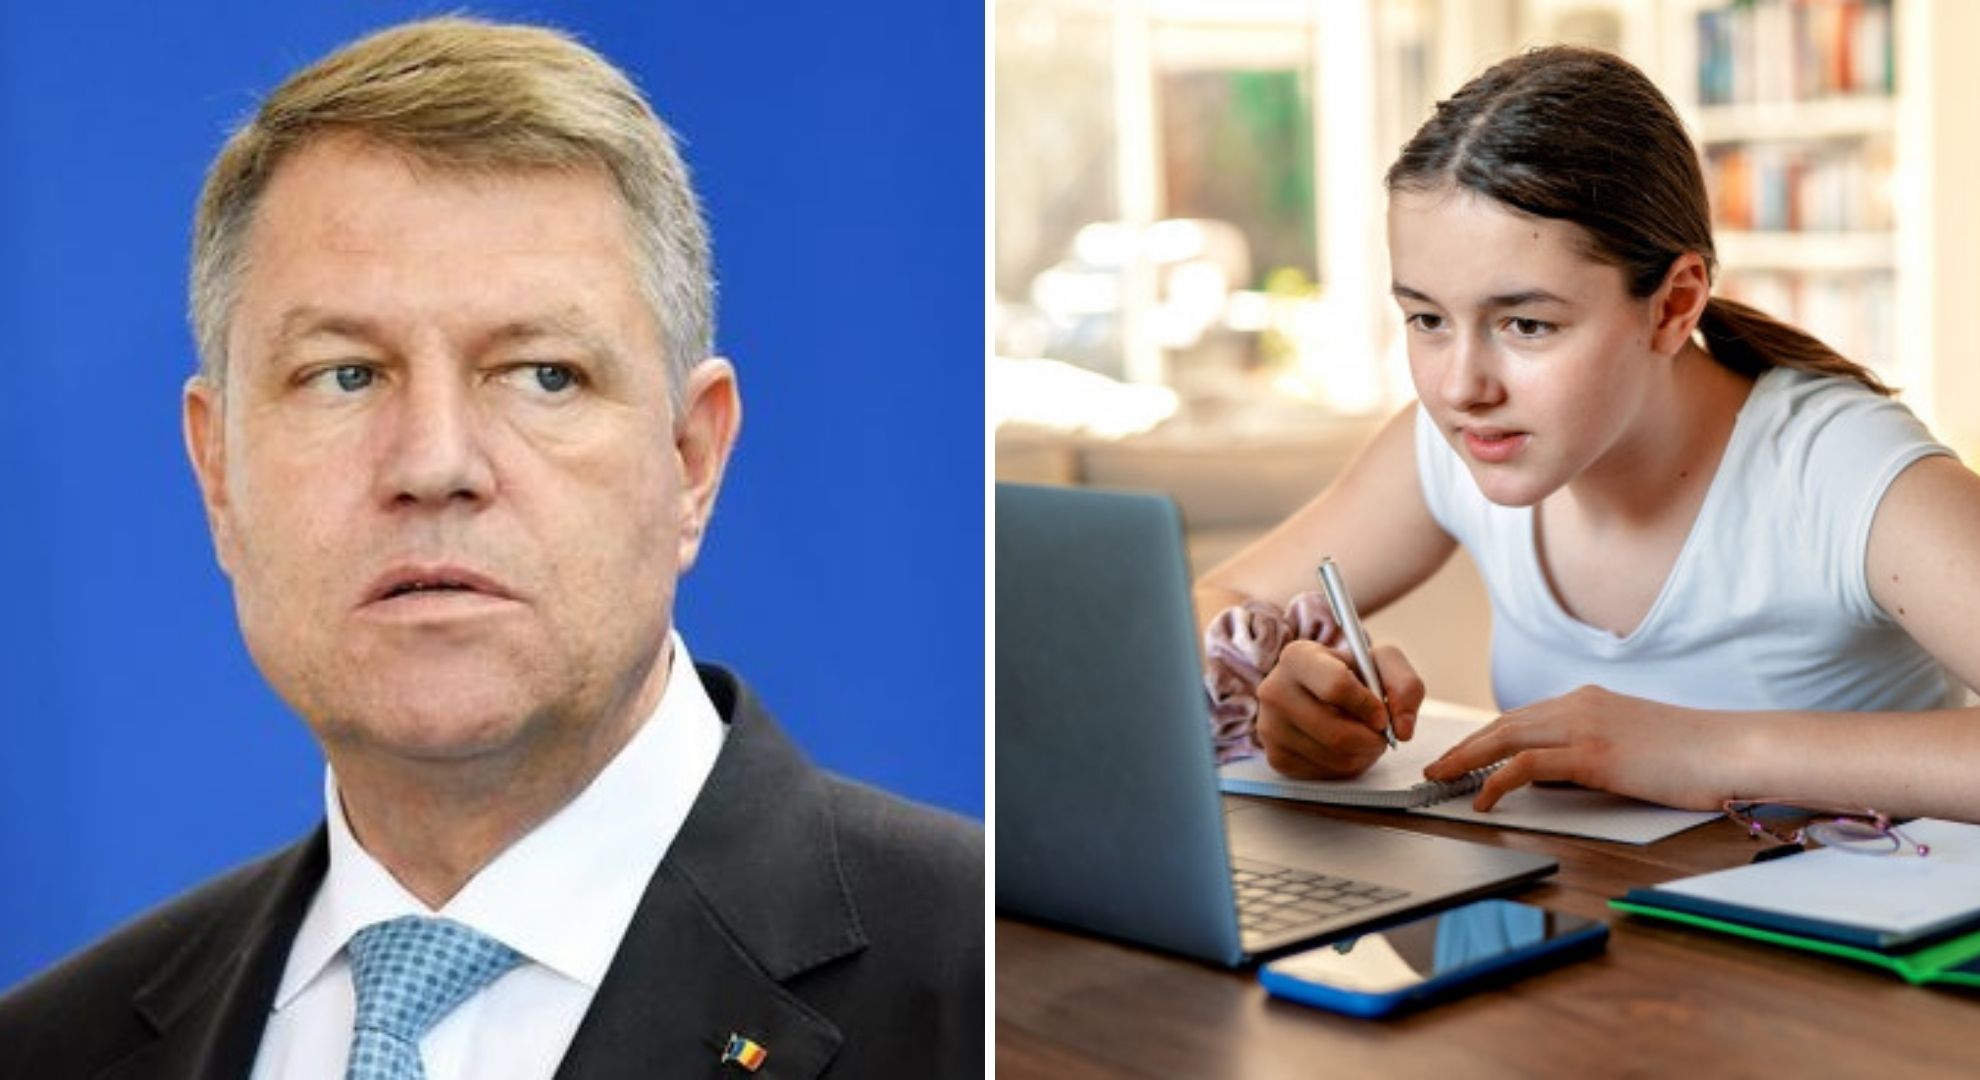 Klaus Iohannis nu este de acord ca școlile să se redeschidă: "Este necesar să se facă învățământ online"